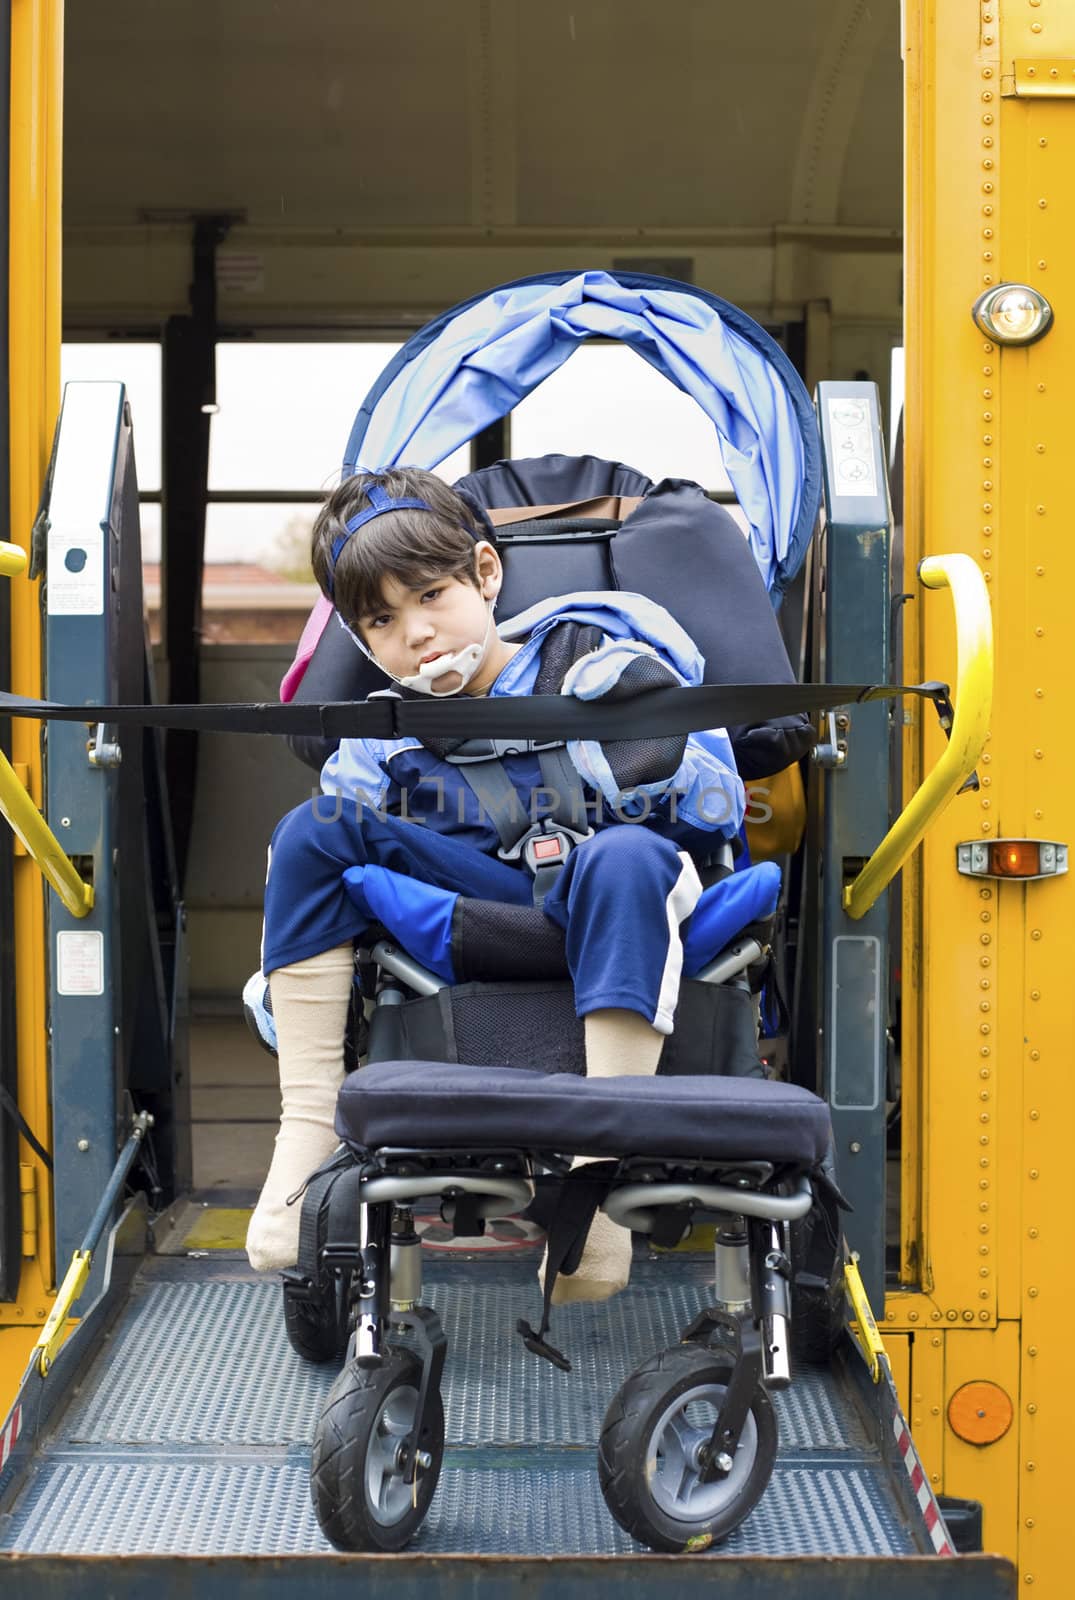 Disabled little boy on school bus wheelchair lift by jarenwicklund